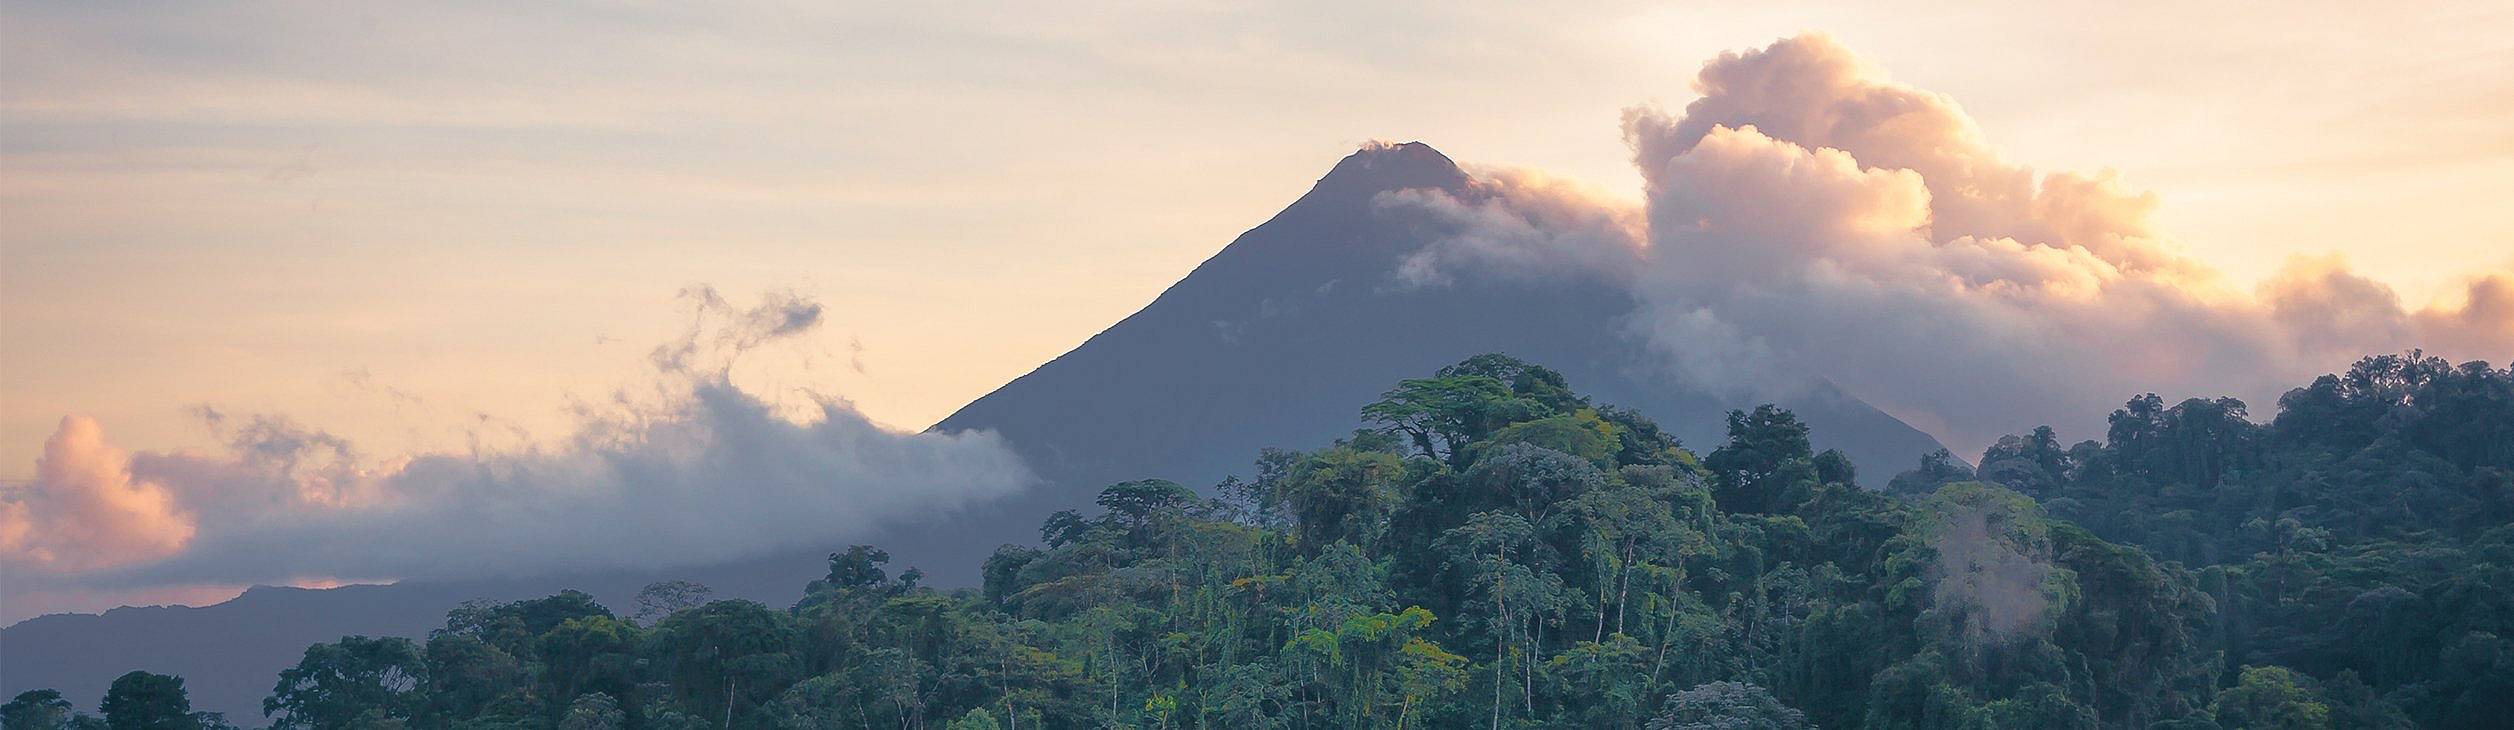 Städtereise Costa Rica - Reise jetzt individuell gestalten